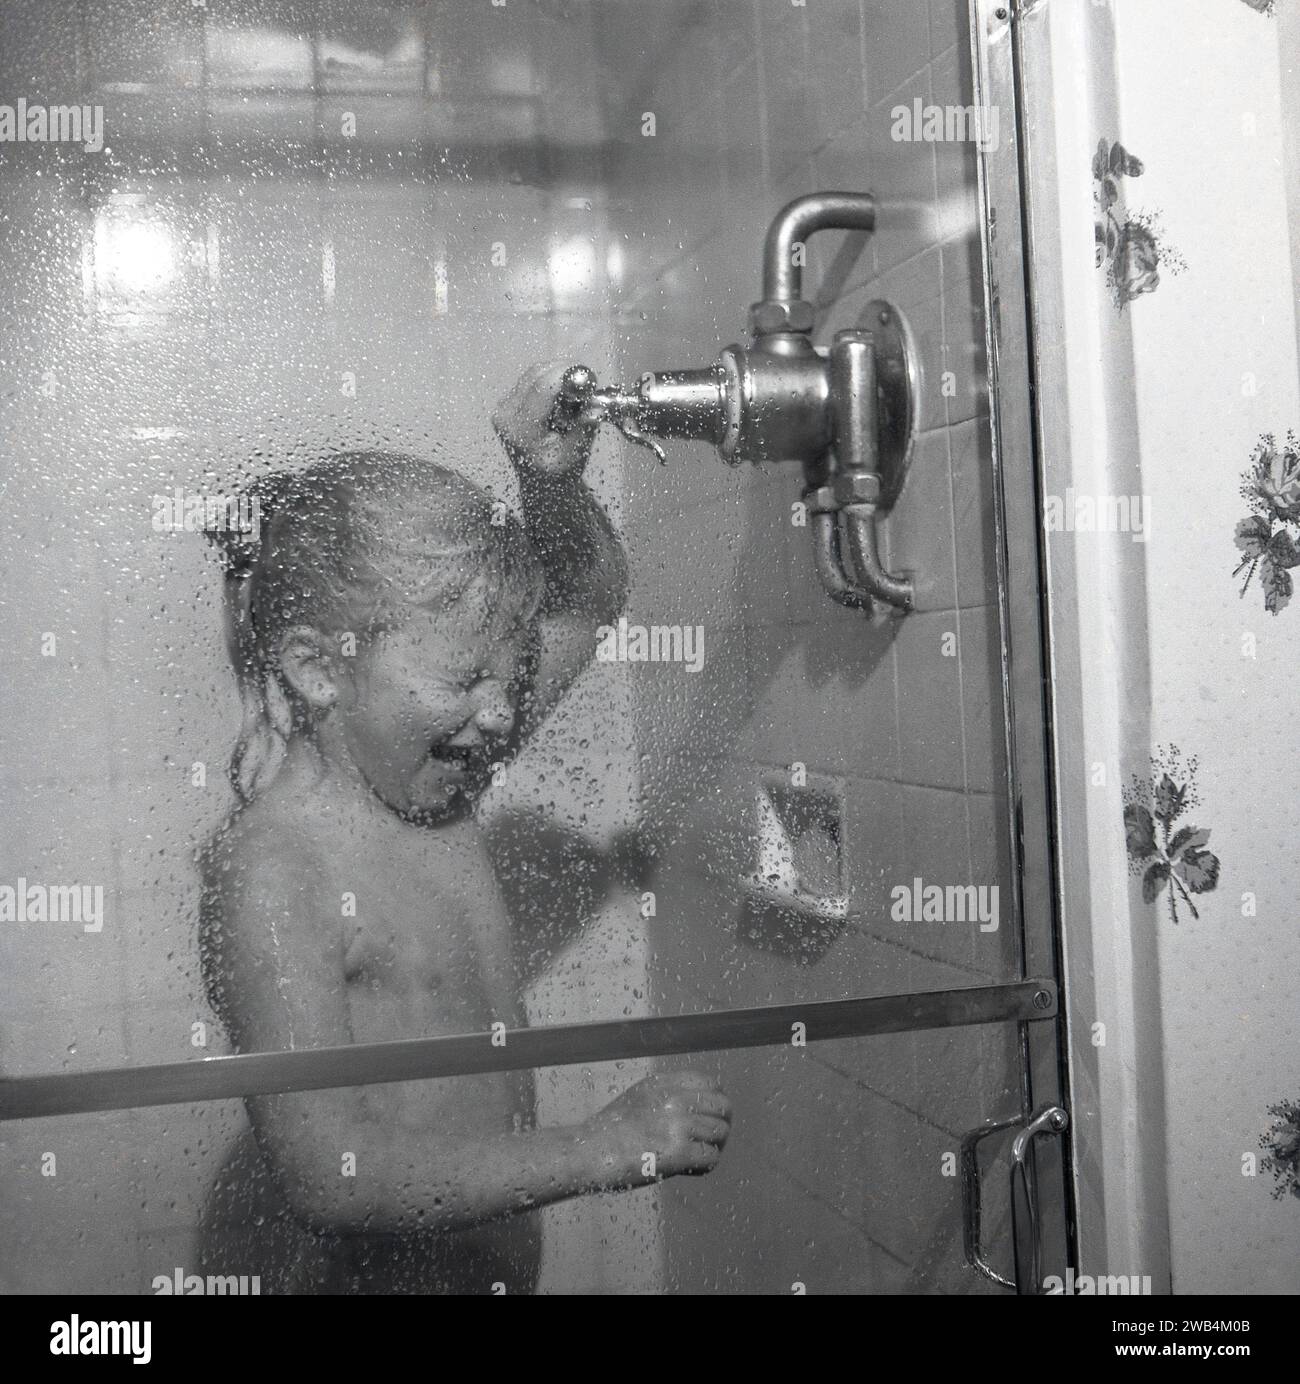 1991, historique, une jeune fille excitée debout dans un cubicule, profitant de l'eau chaude d'une douche puissante, Angleterre, Royaume-Uni. Banque D'Images